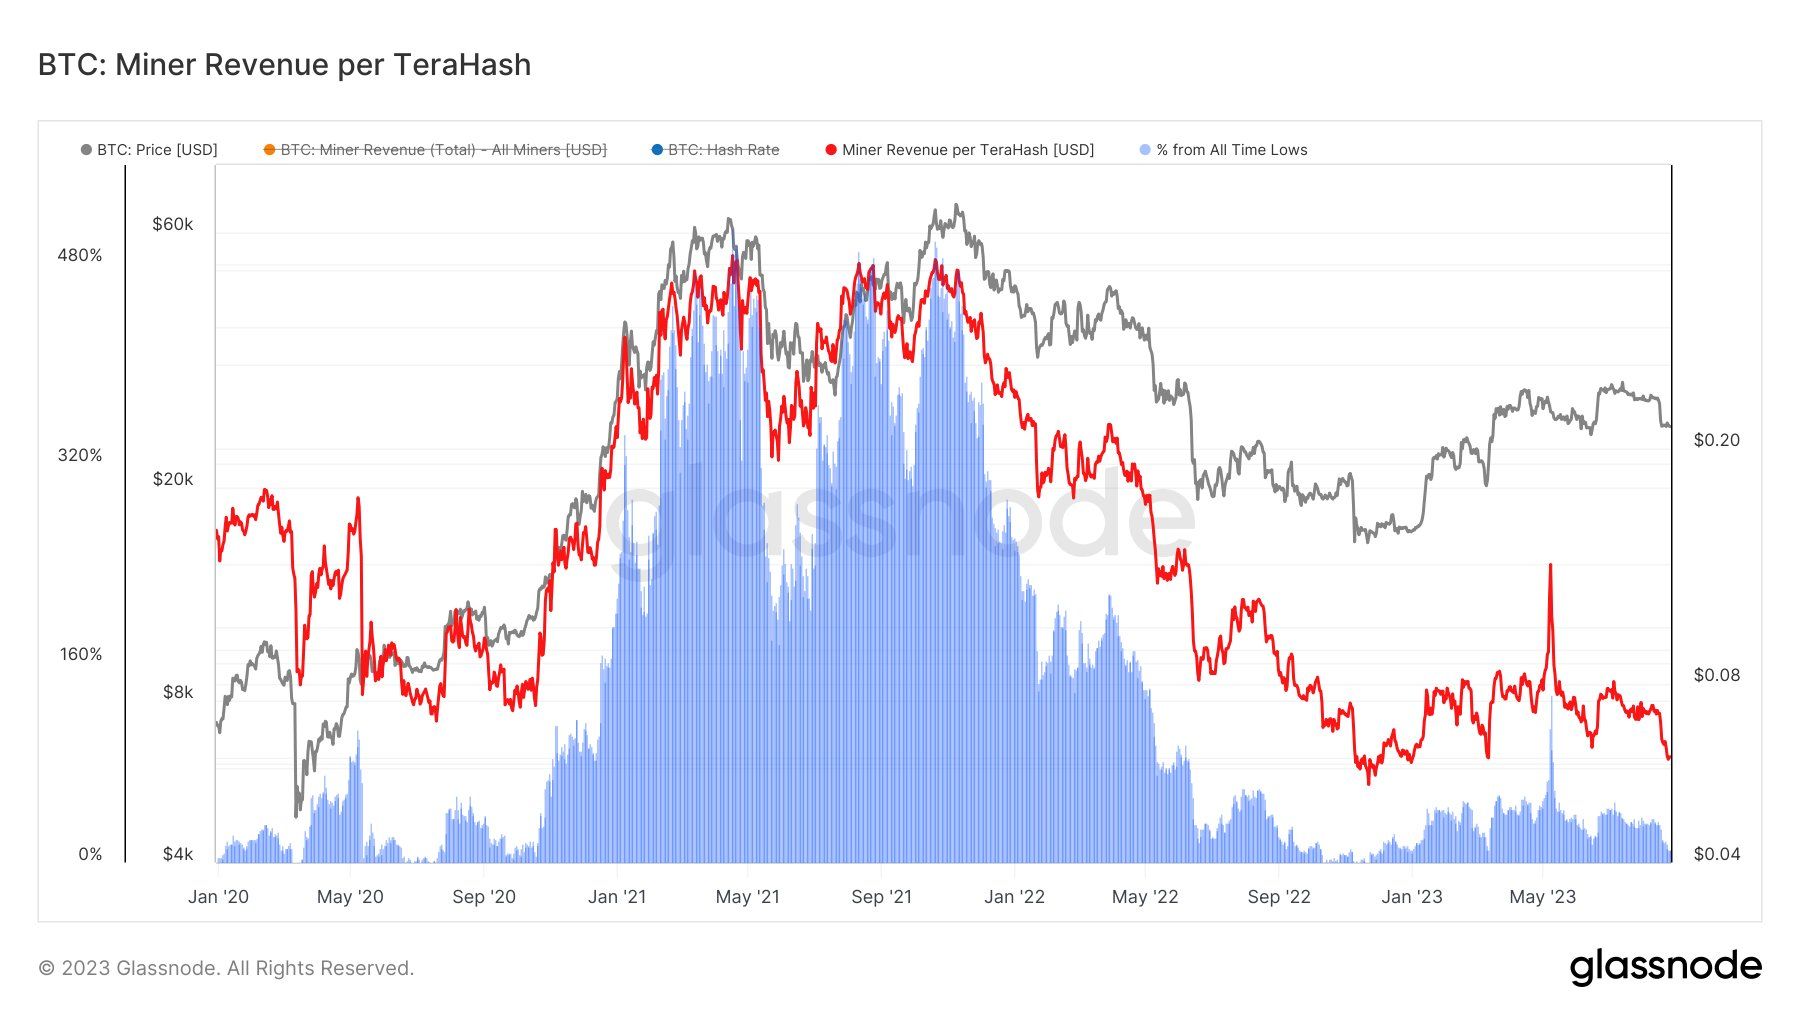 Giá Bitcoin (đường màu xám) và doanh thu của Miners tính trên mỗi TeraHash (đường màu đỏ). Nguồn: glassnode.